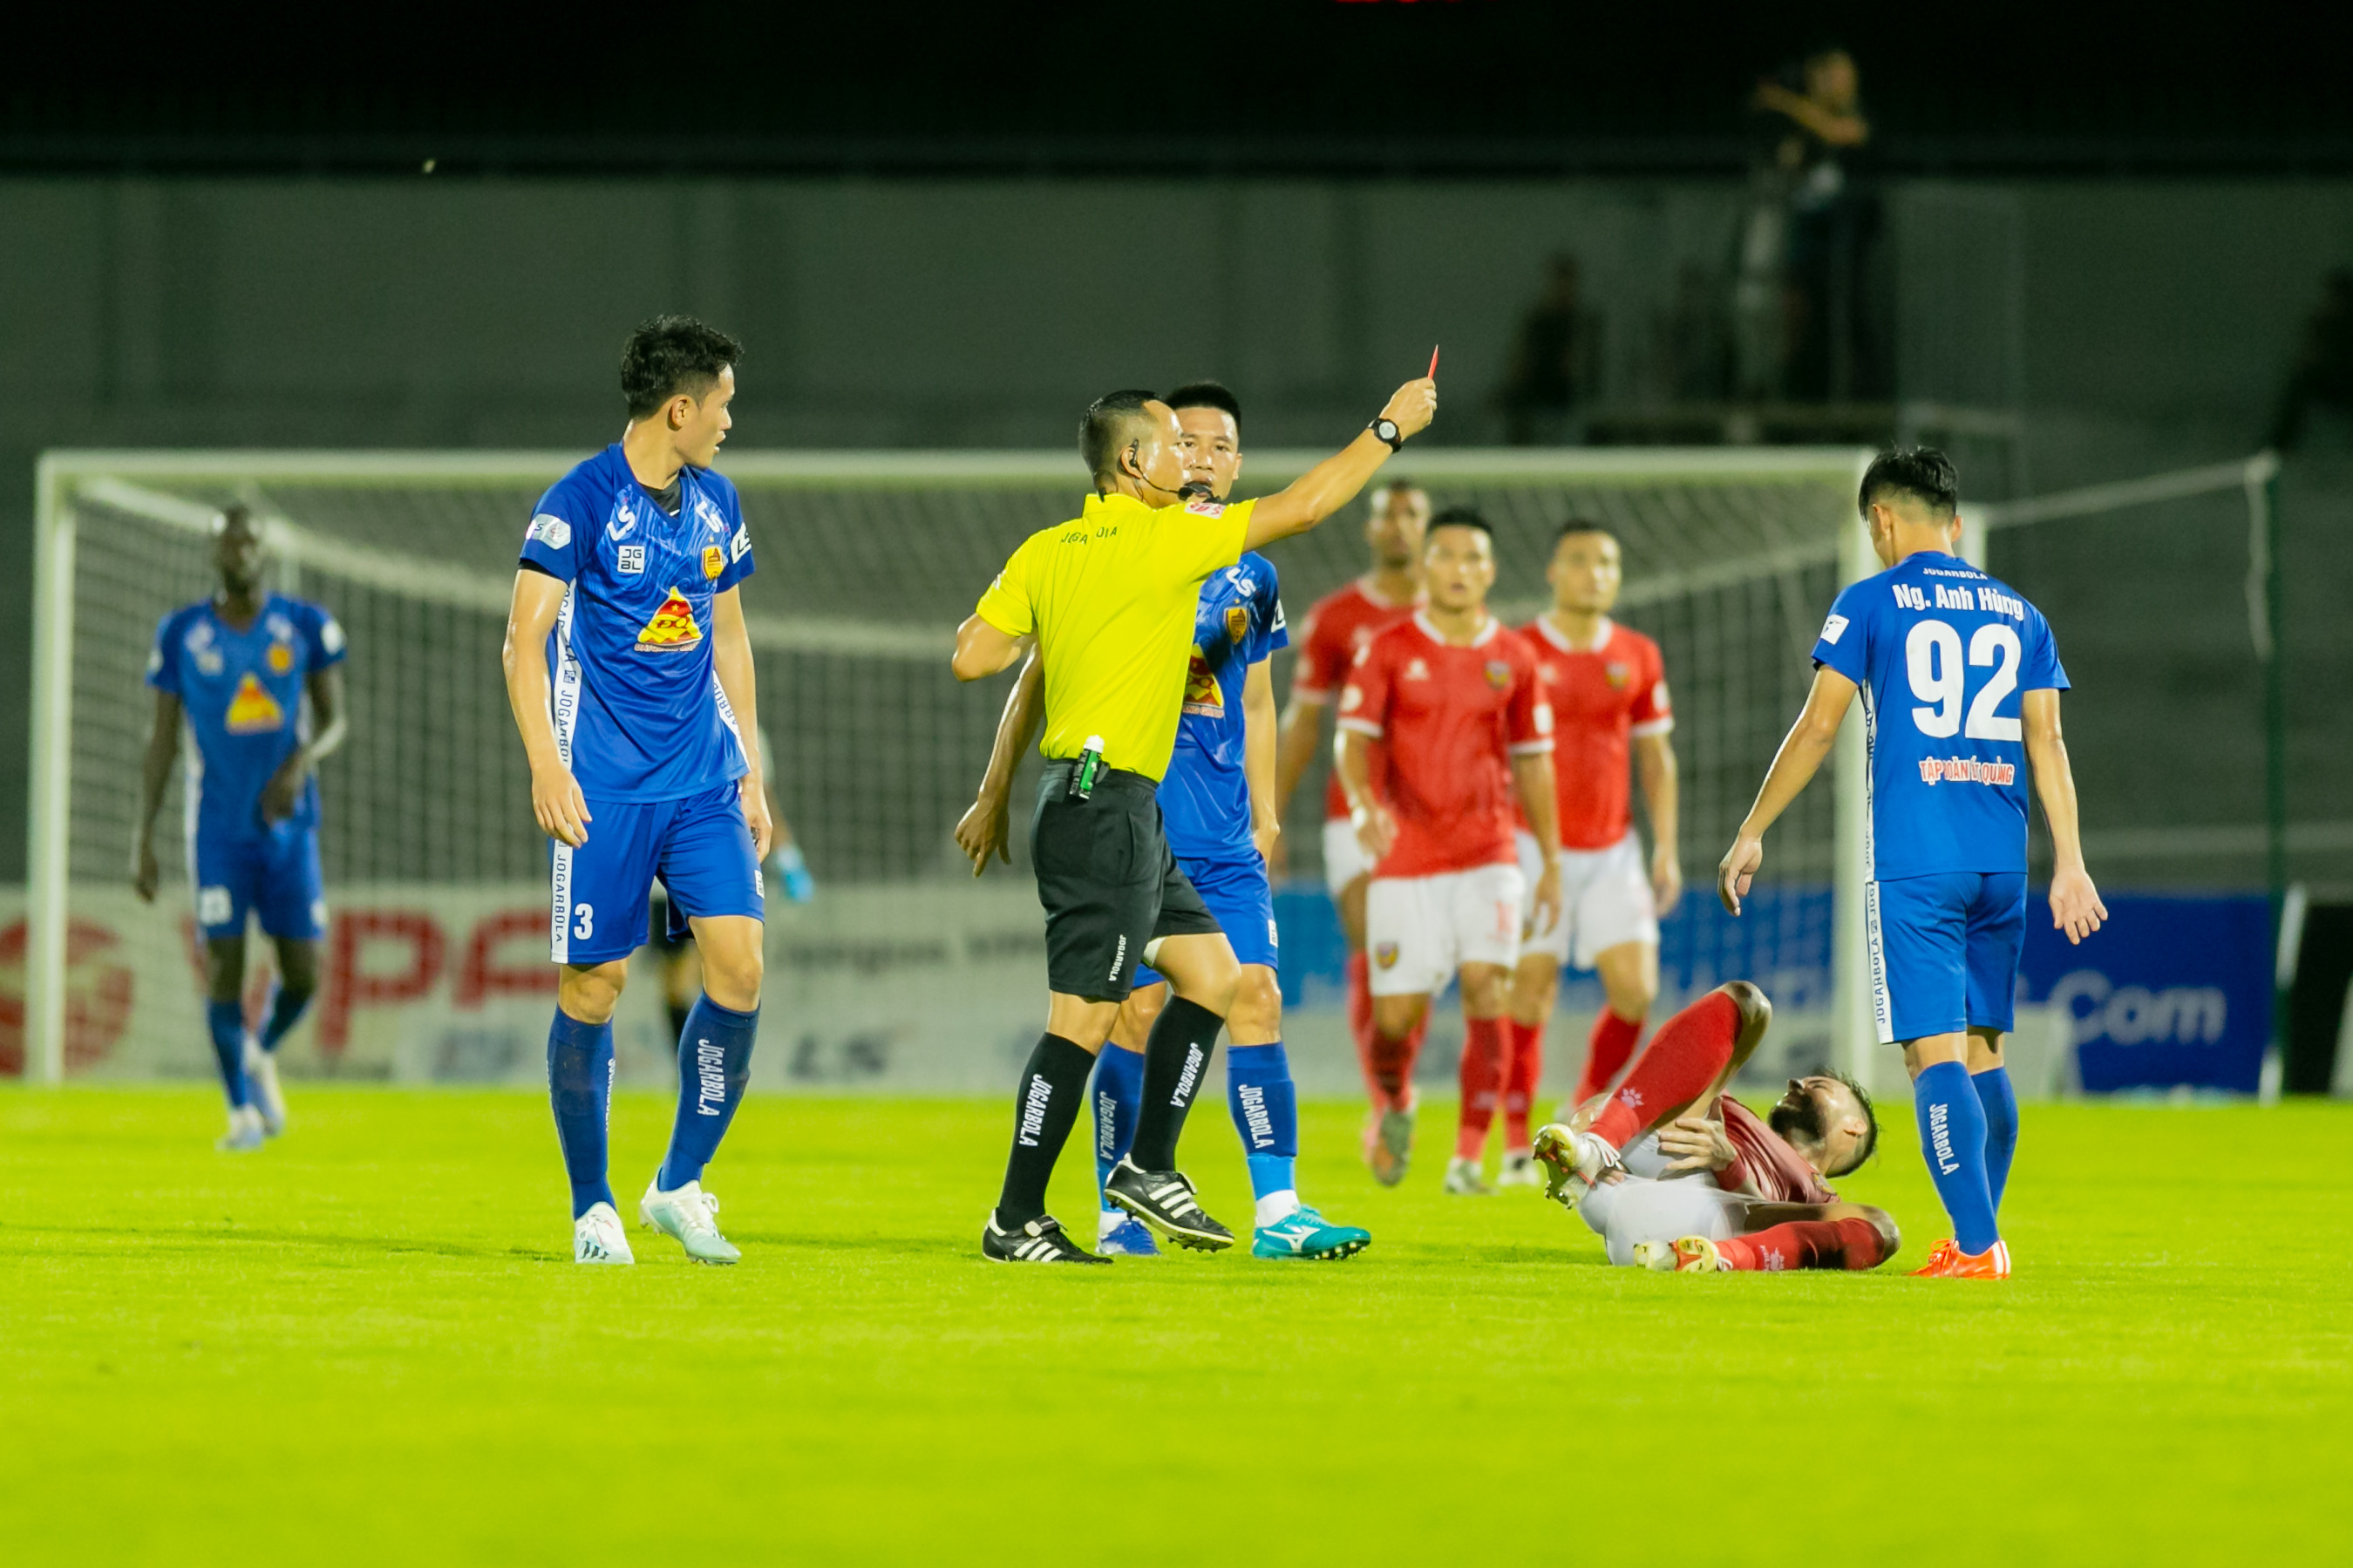 Tình huống bị thẻ đỏ của Nguyễn Anh Hùng (số 92) trong trận đấu với Hồng Lĩnh Hà Tĩnh. Ảnh: Xuân Thủy 